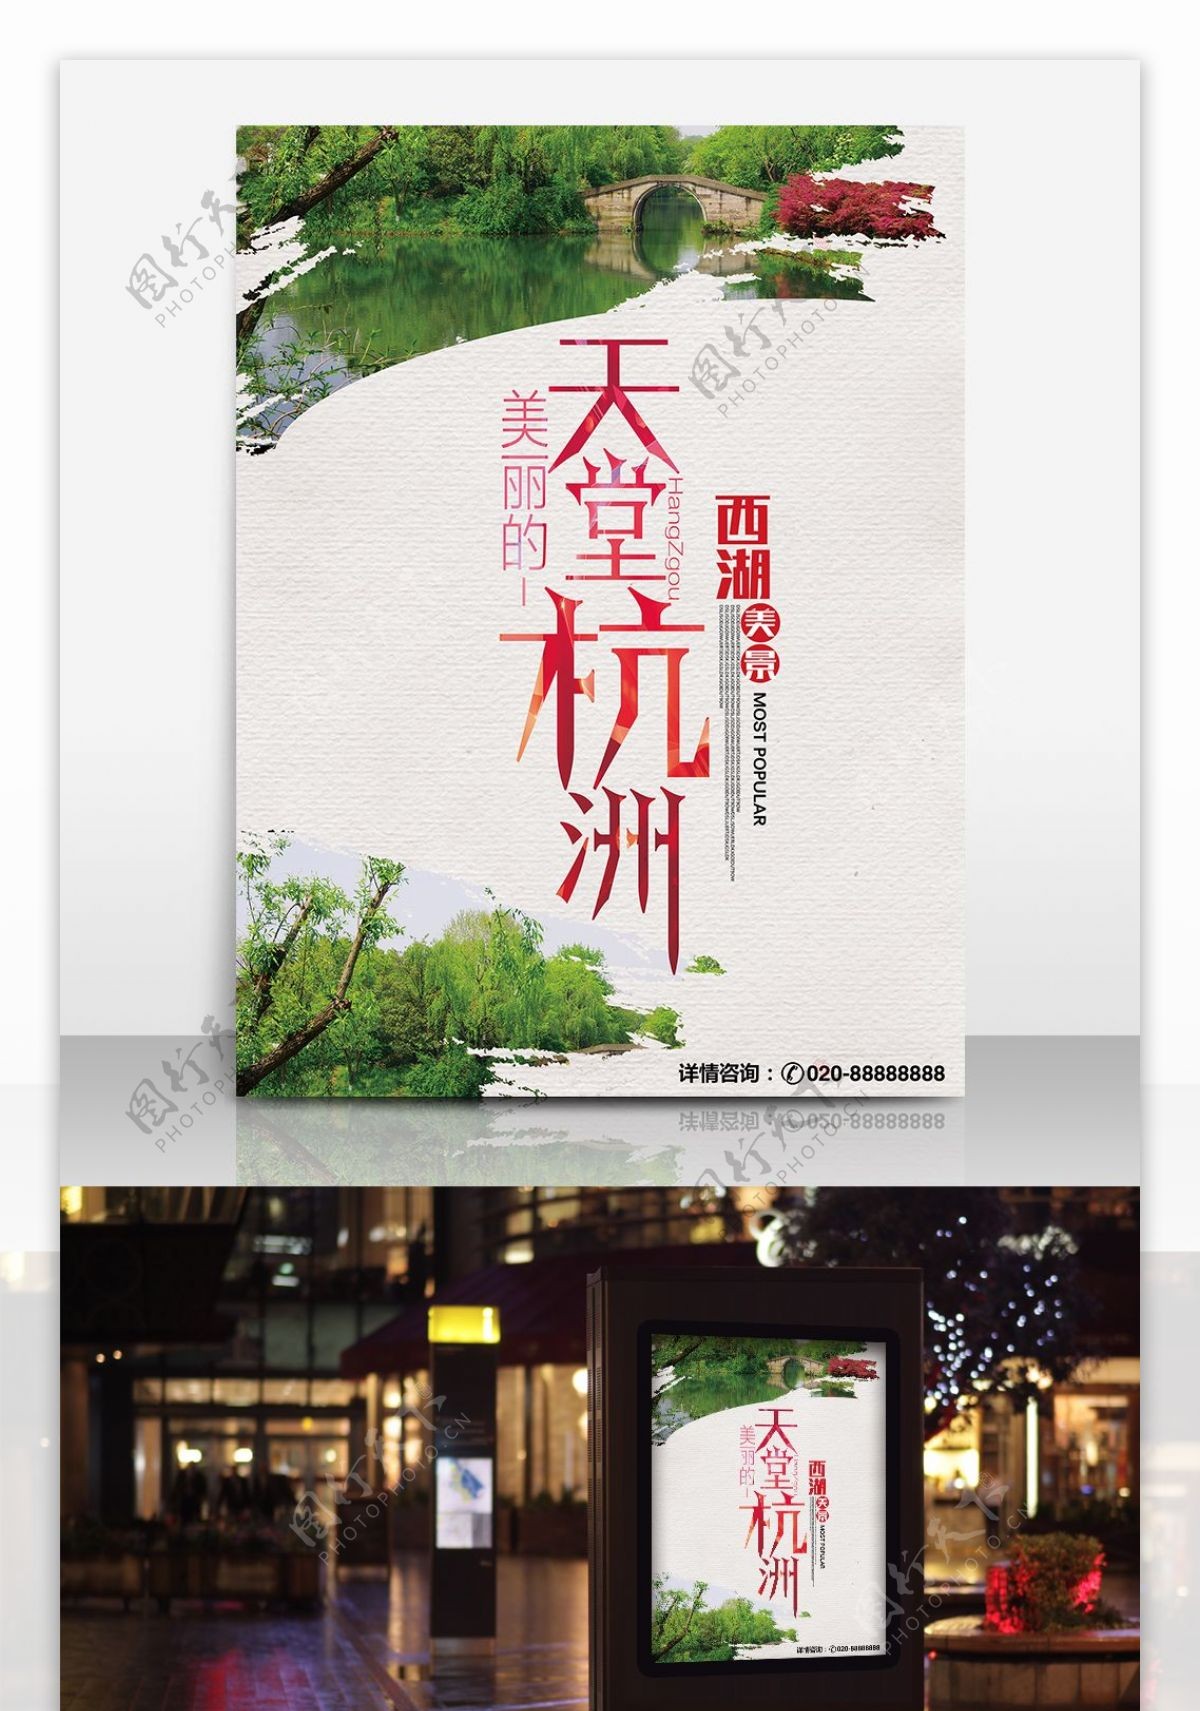 天堂杭州旅行社宣传海报